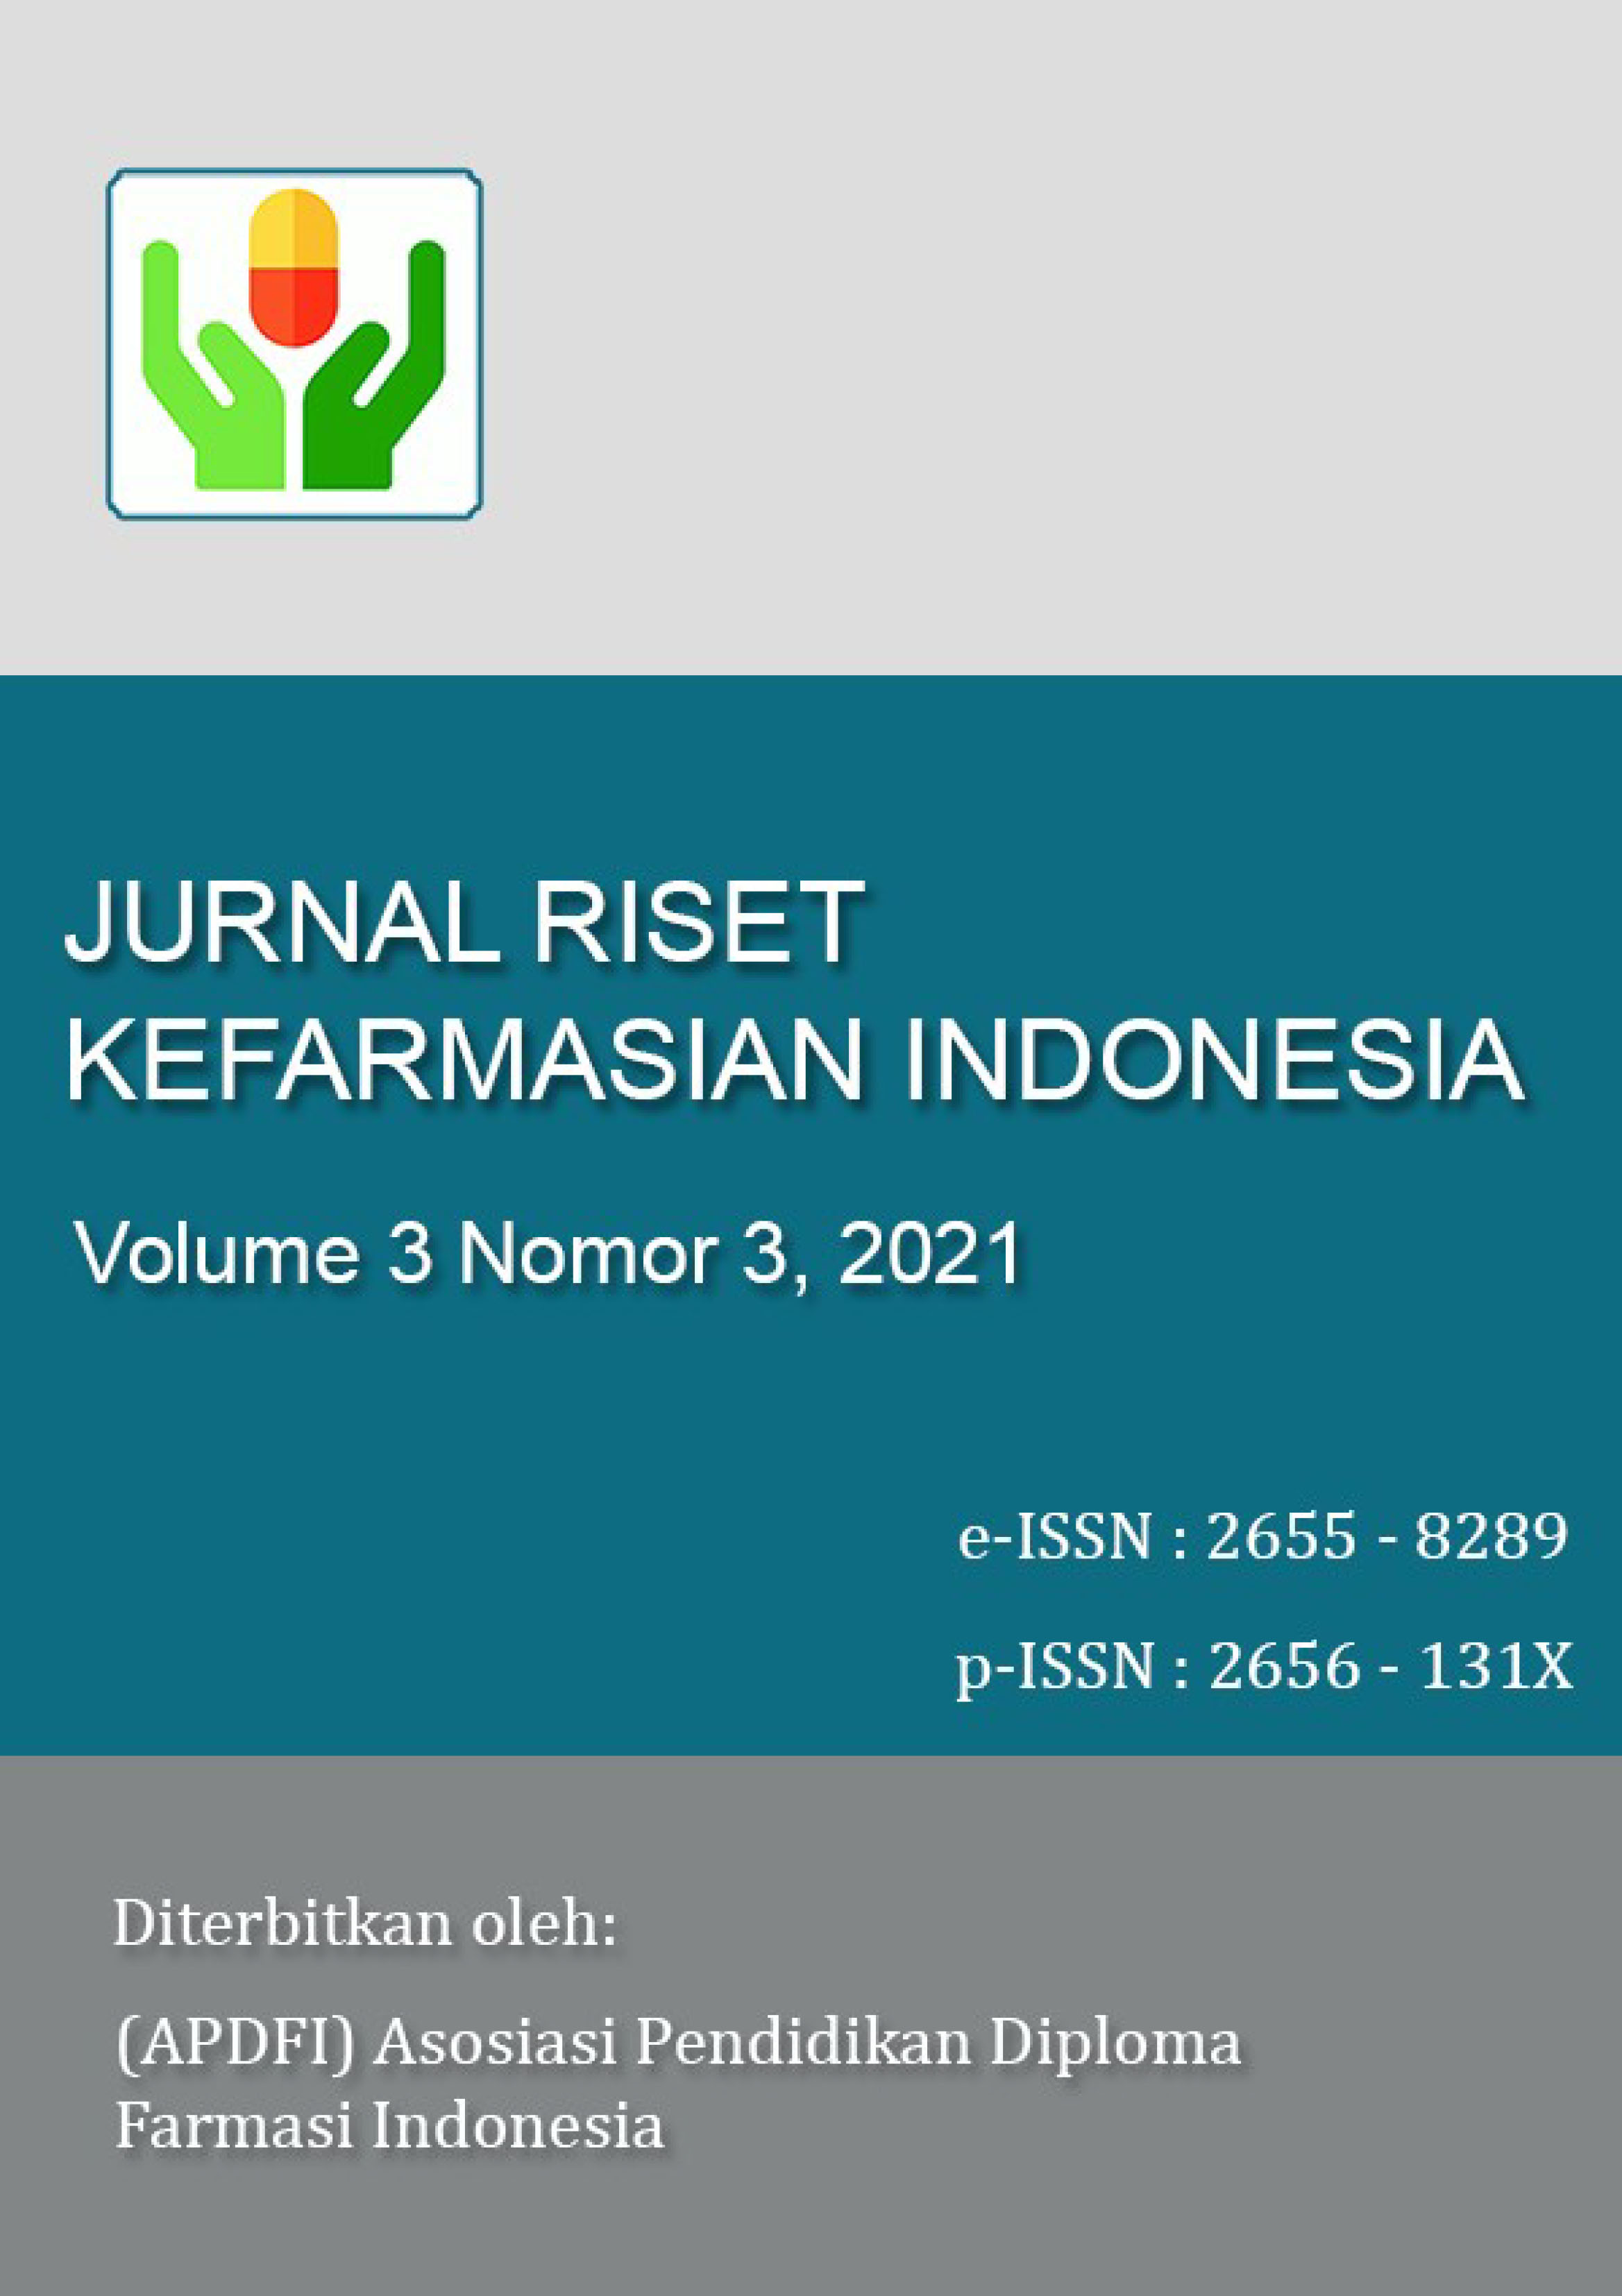 Jurnal Riset Kefarmasian Indonesia Vol. 3 Nomor 3 2021